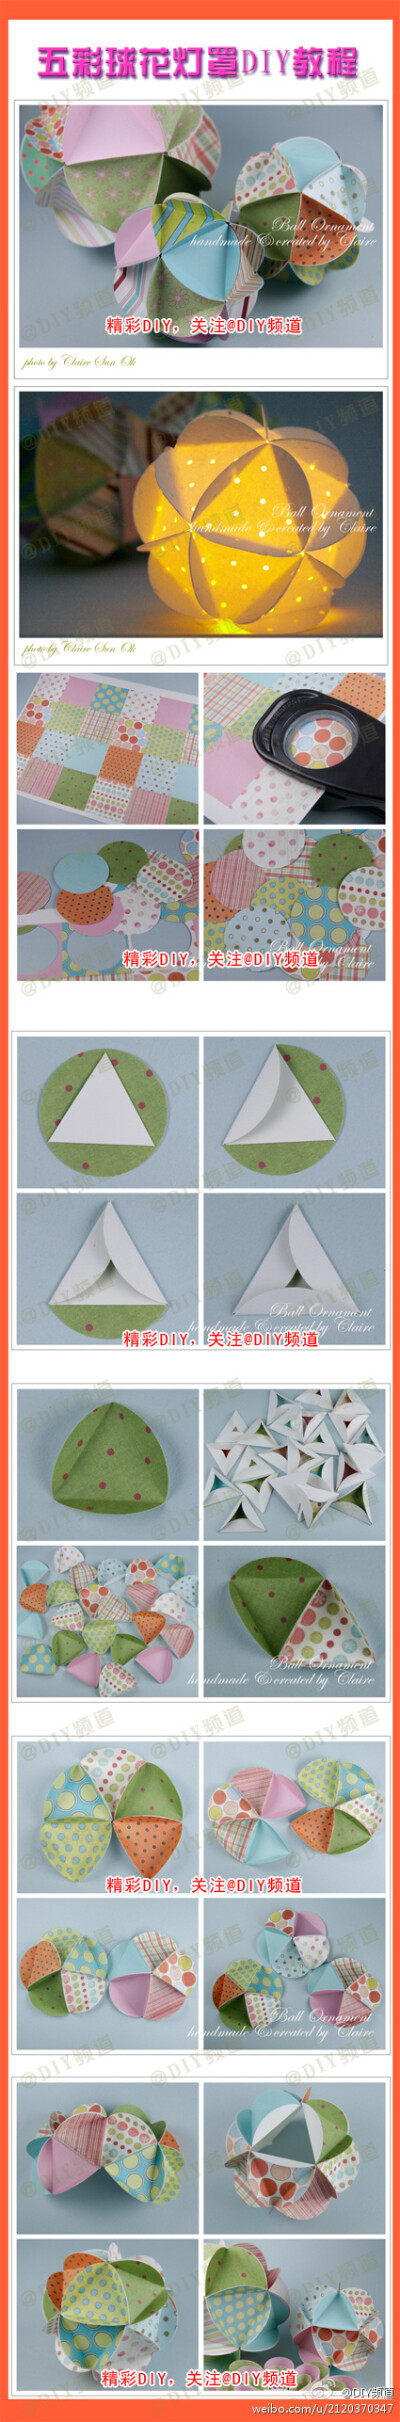 手工DIY折纸教程——花球